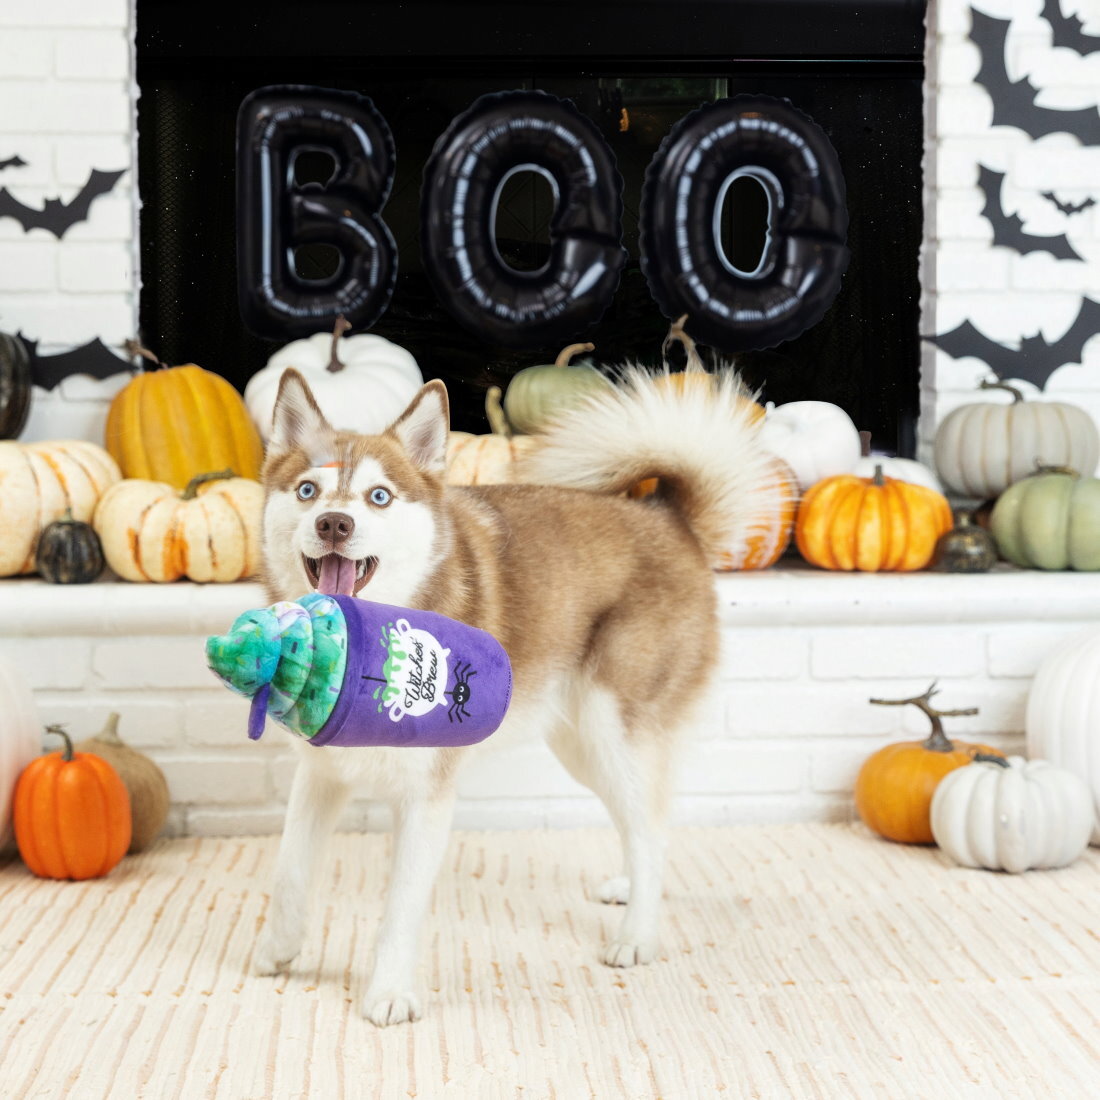 Fringe Studio Halloween Plush Squeaker Dog Toy - Witches Brew image 1